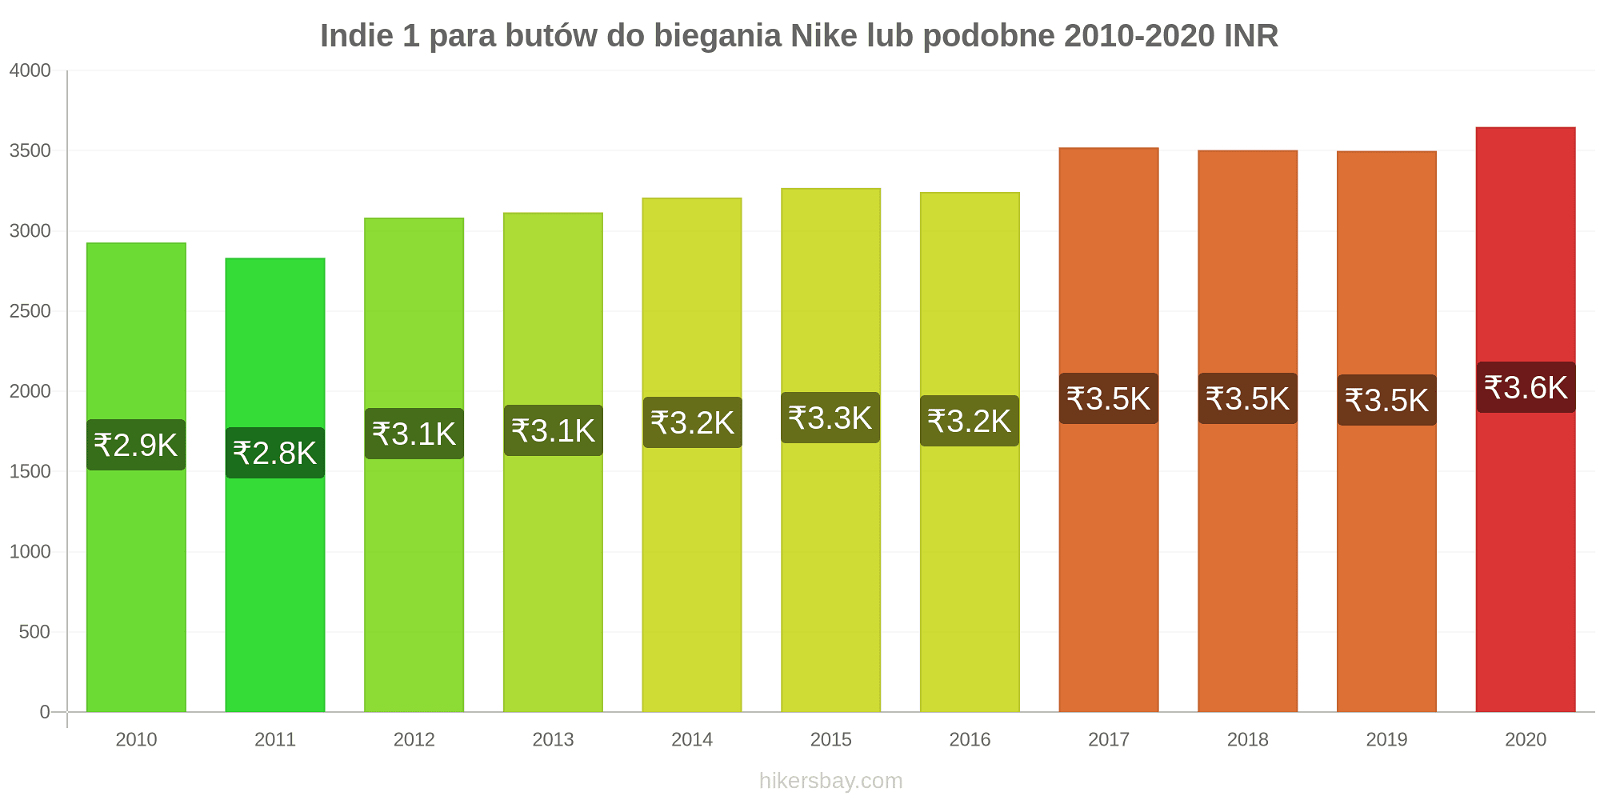 Indie zmiany cen 1 para butów do biegania Nike lub podobne hikersbay.com